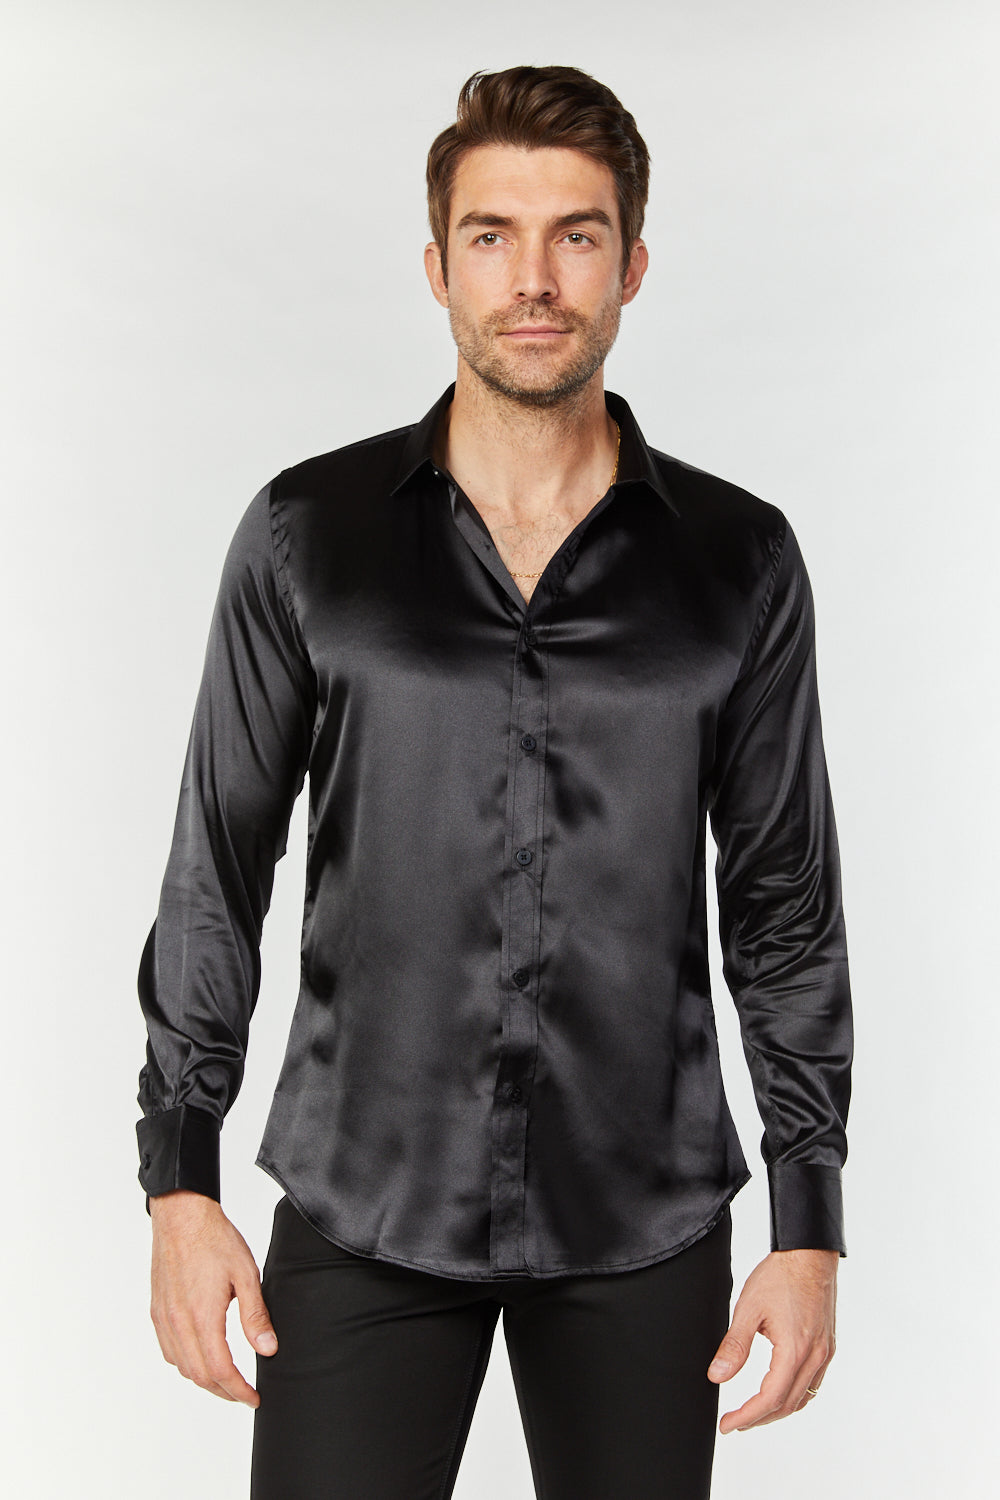 MEN'S SATIN BLACK DRESS SHIRT  Platini Jeans – Platini Fashion